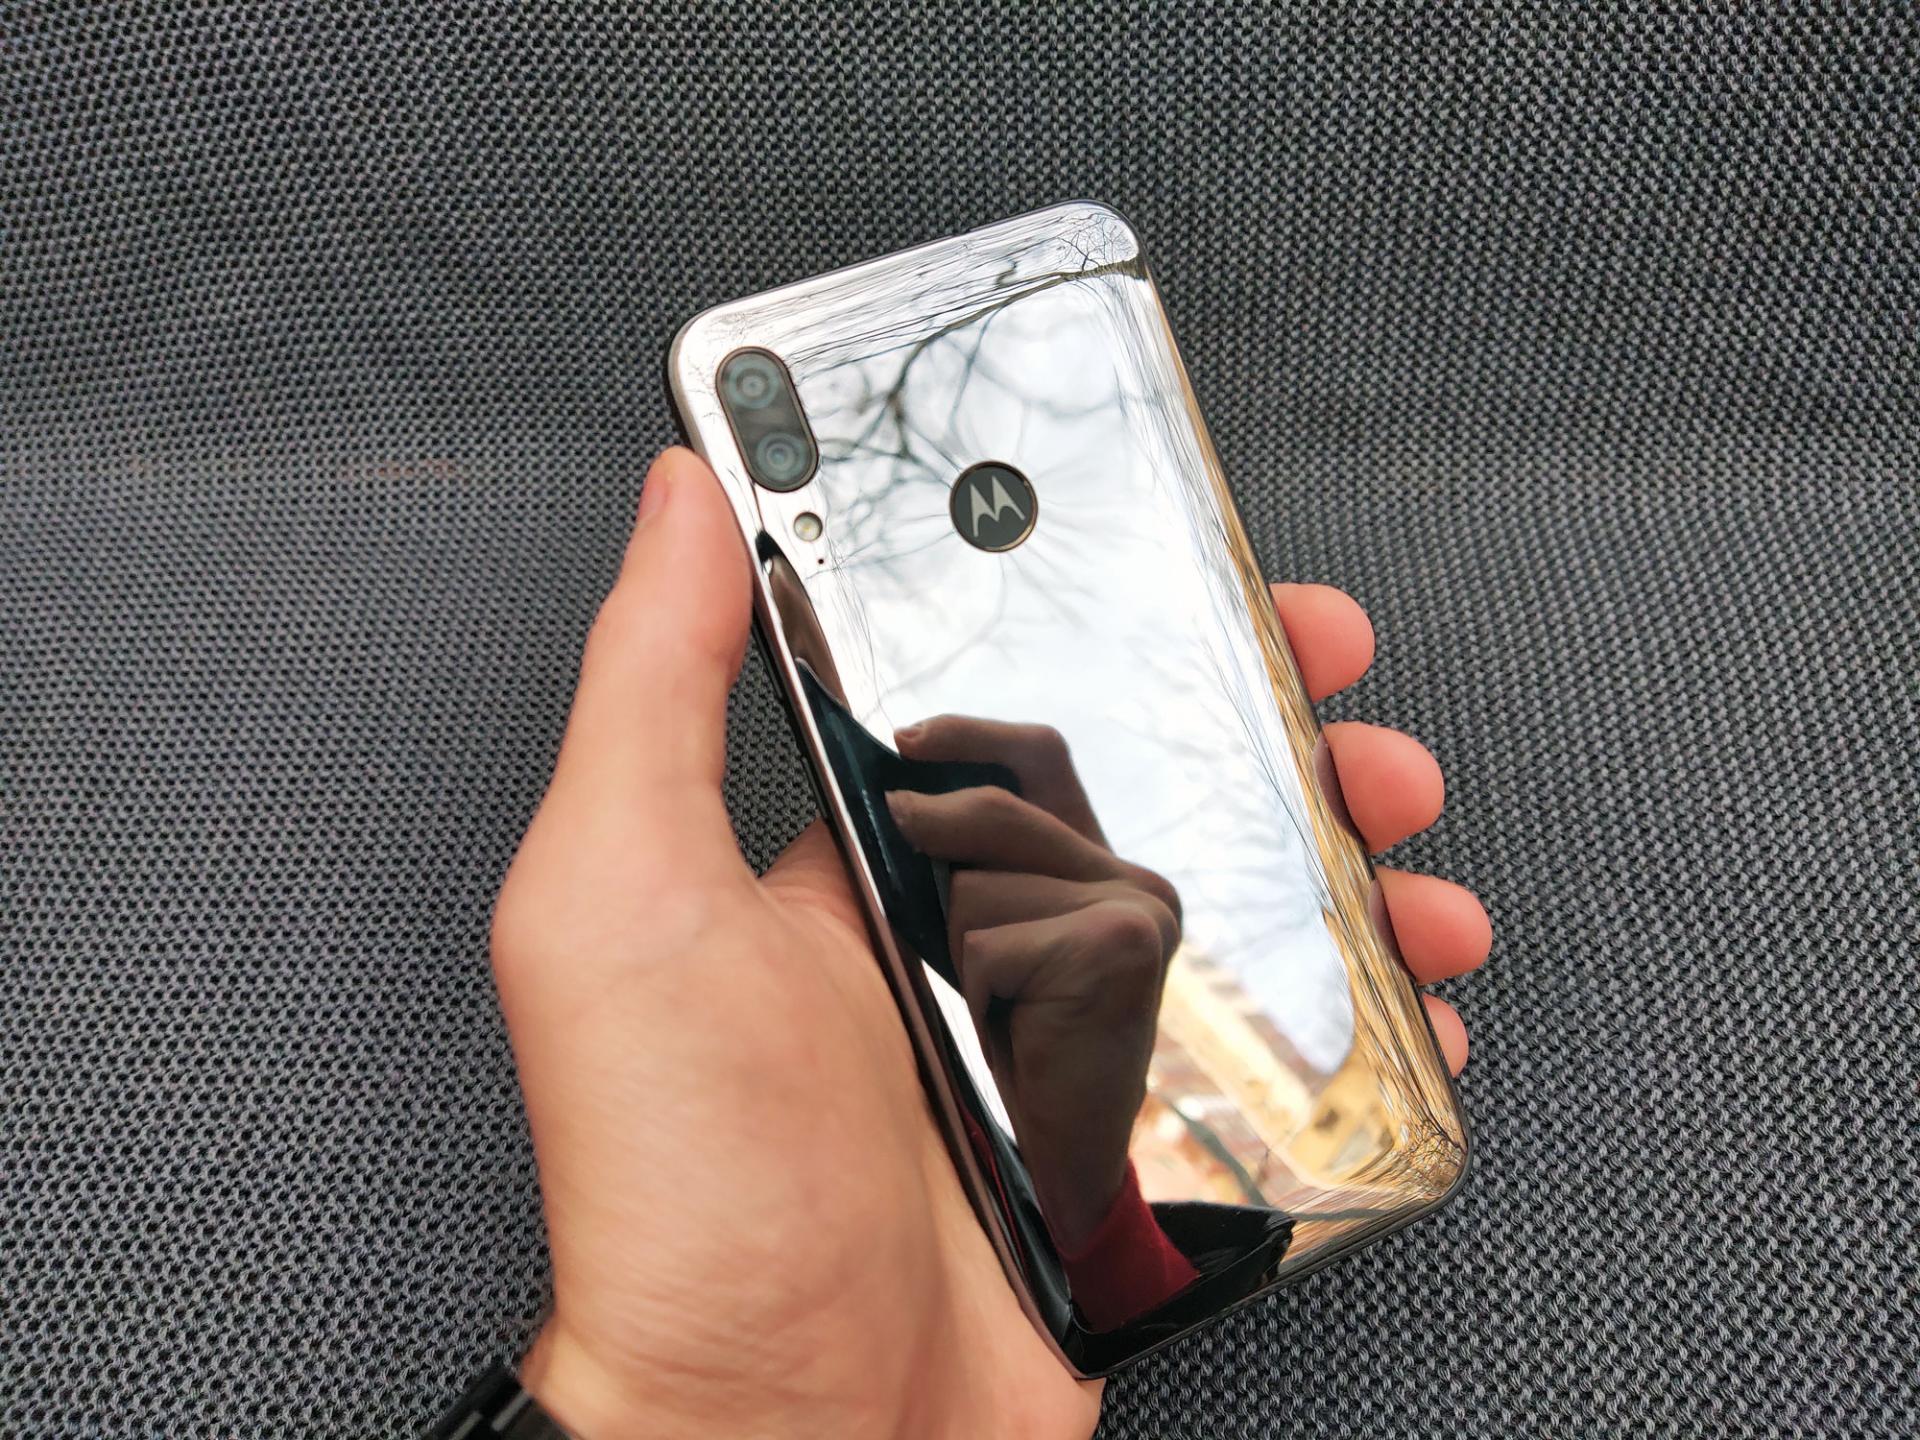 Обзор смартфона Motorola Moto E6 Plus